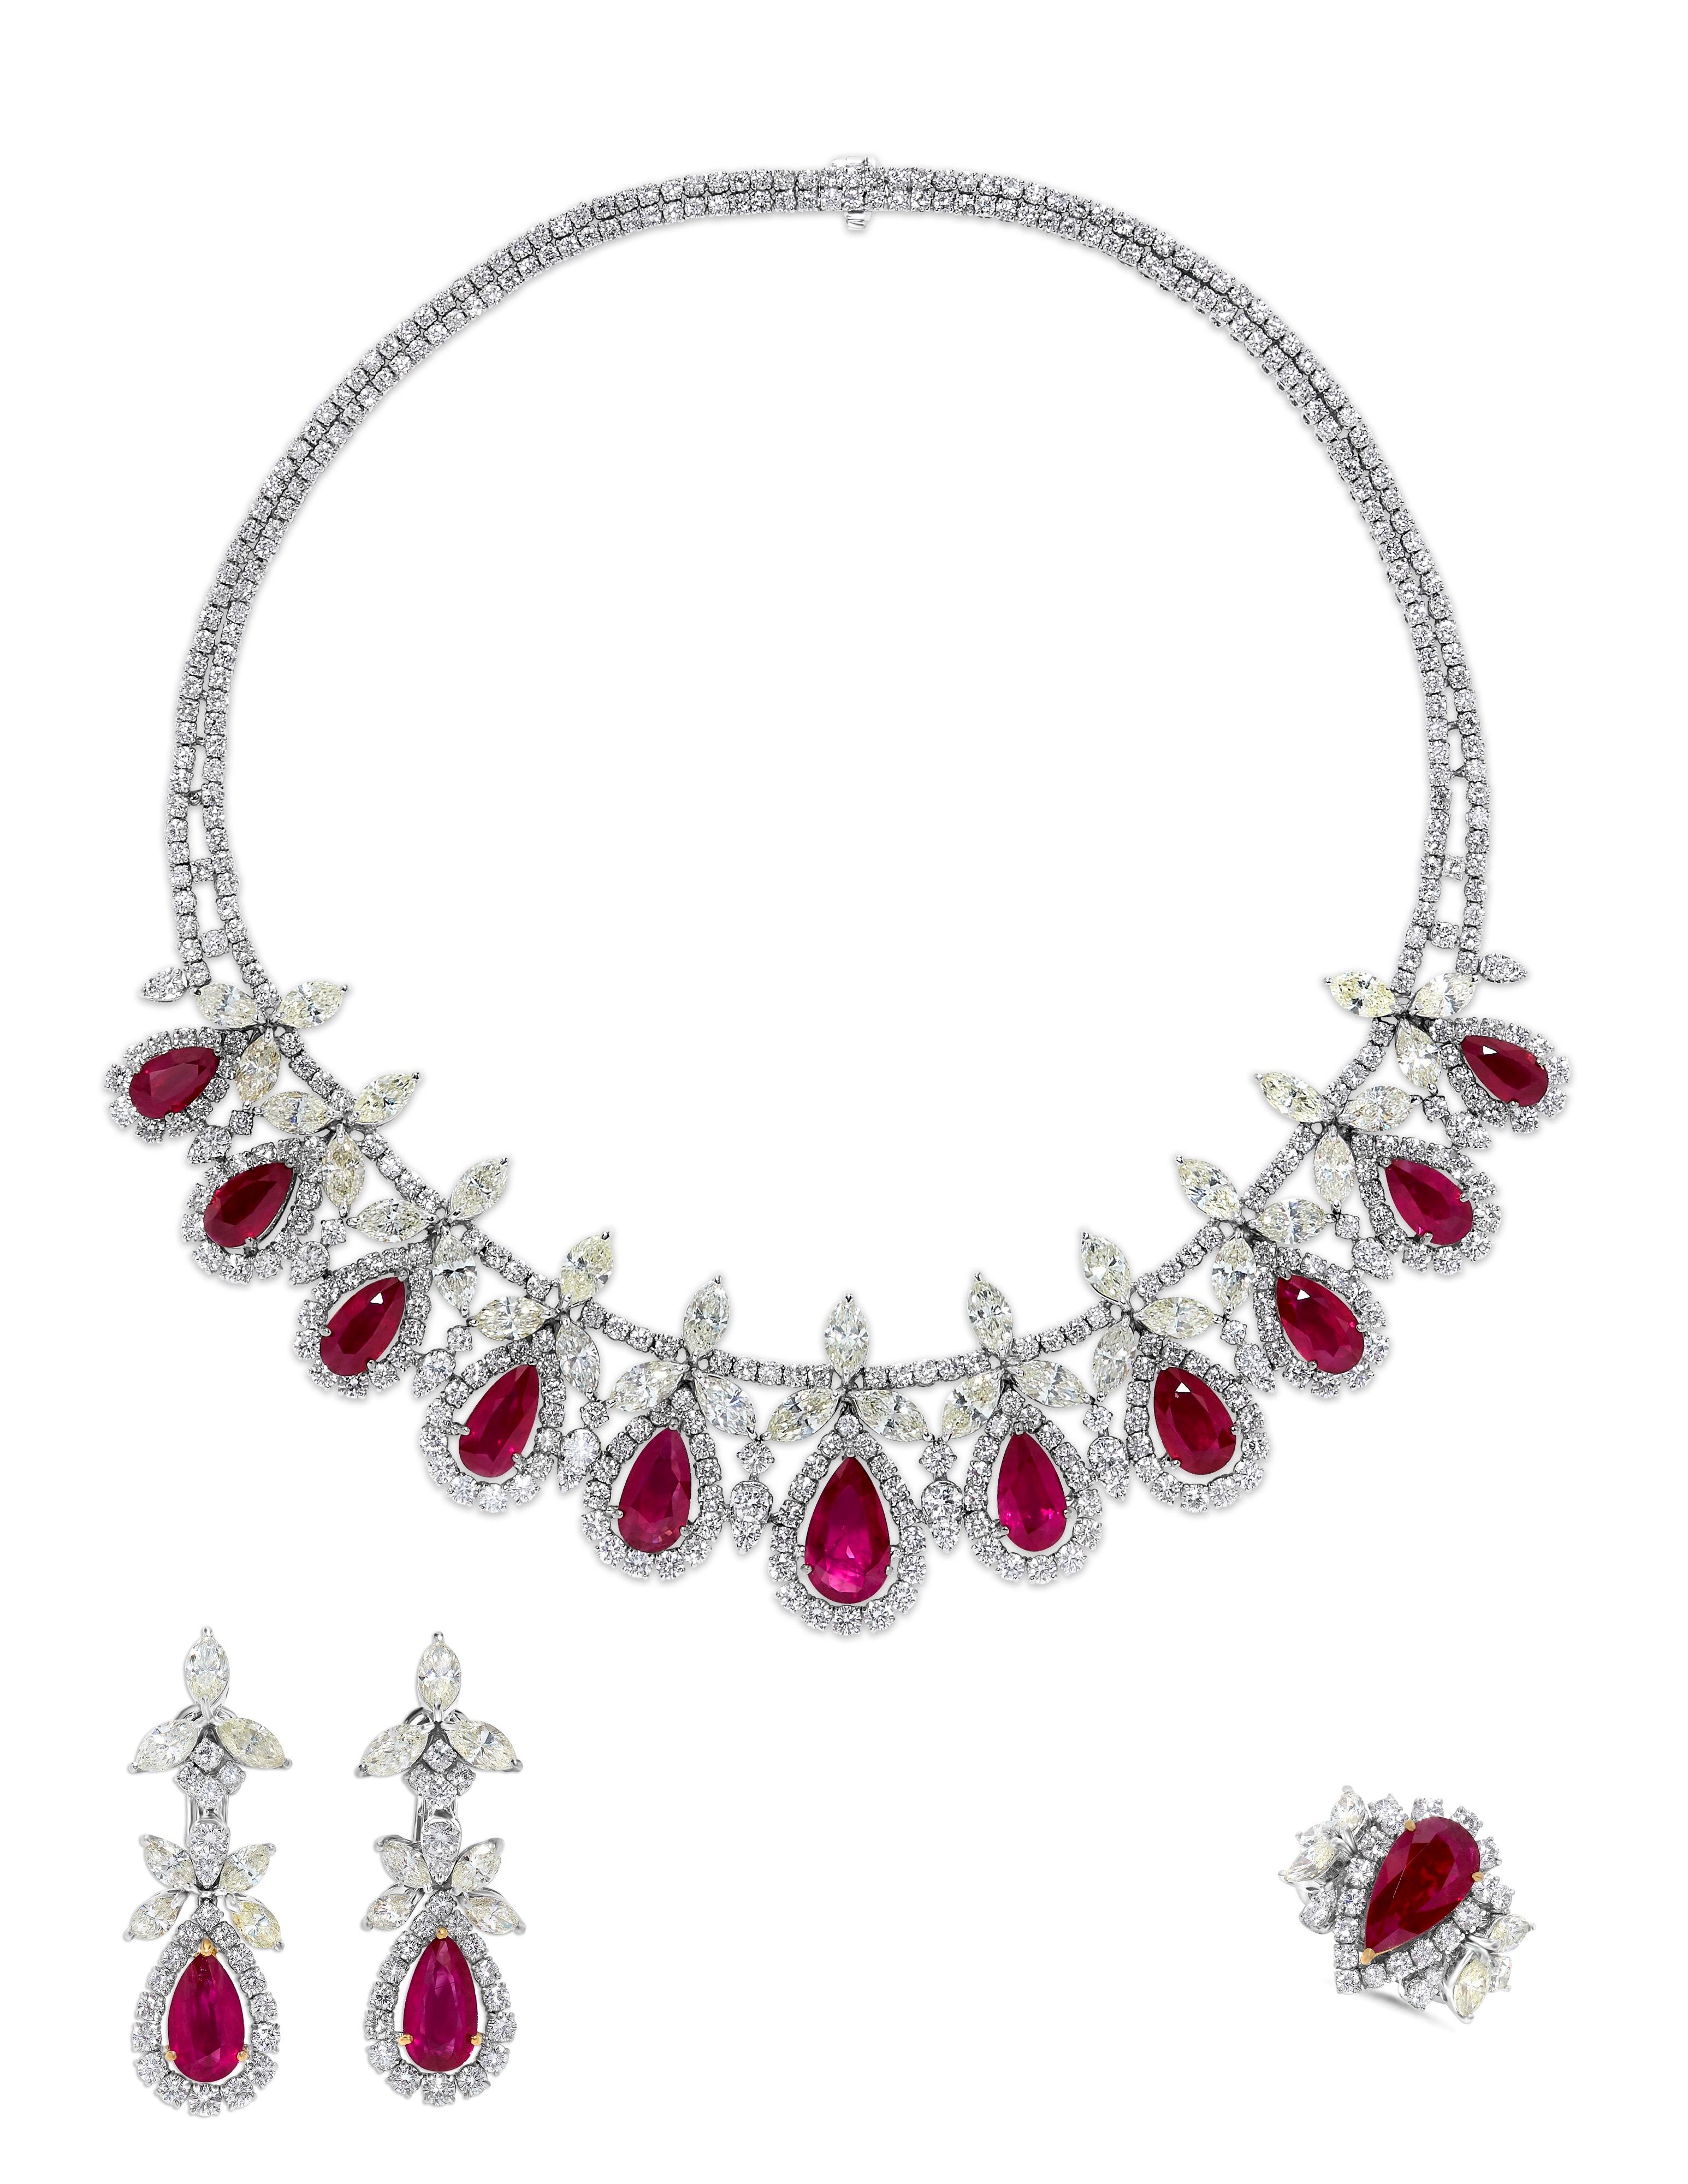 Oval Cut Emilio Jewelry 113.00 Carat Ruby Diamond Suite  For Sale